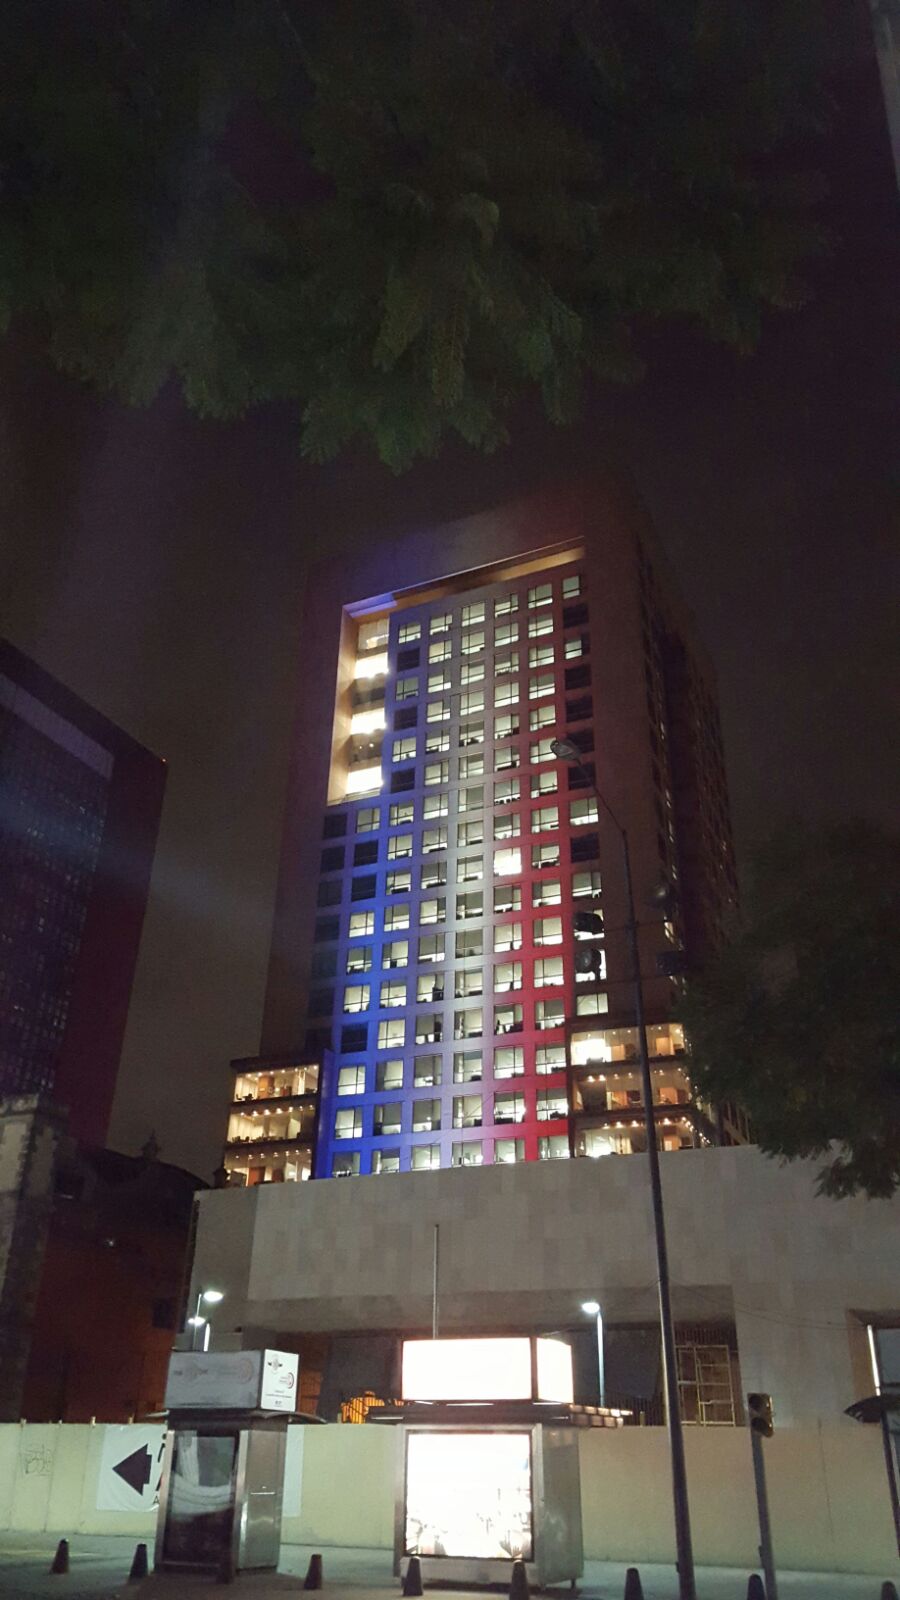 FOTO 3 Edificio de la Canciller a iluminado con los colores de Franciajpg